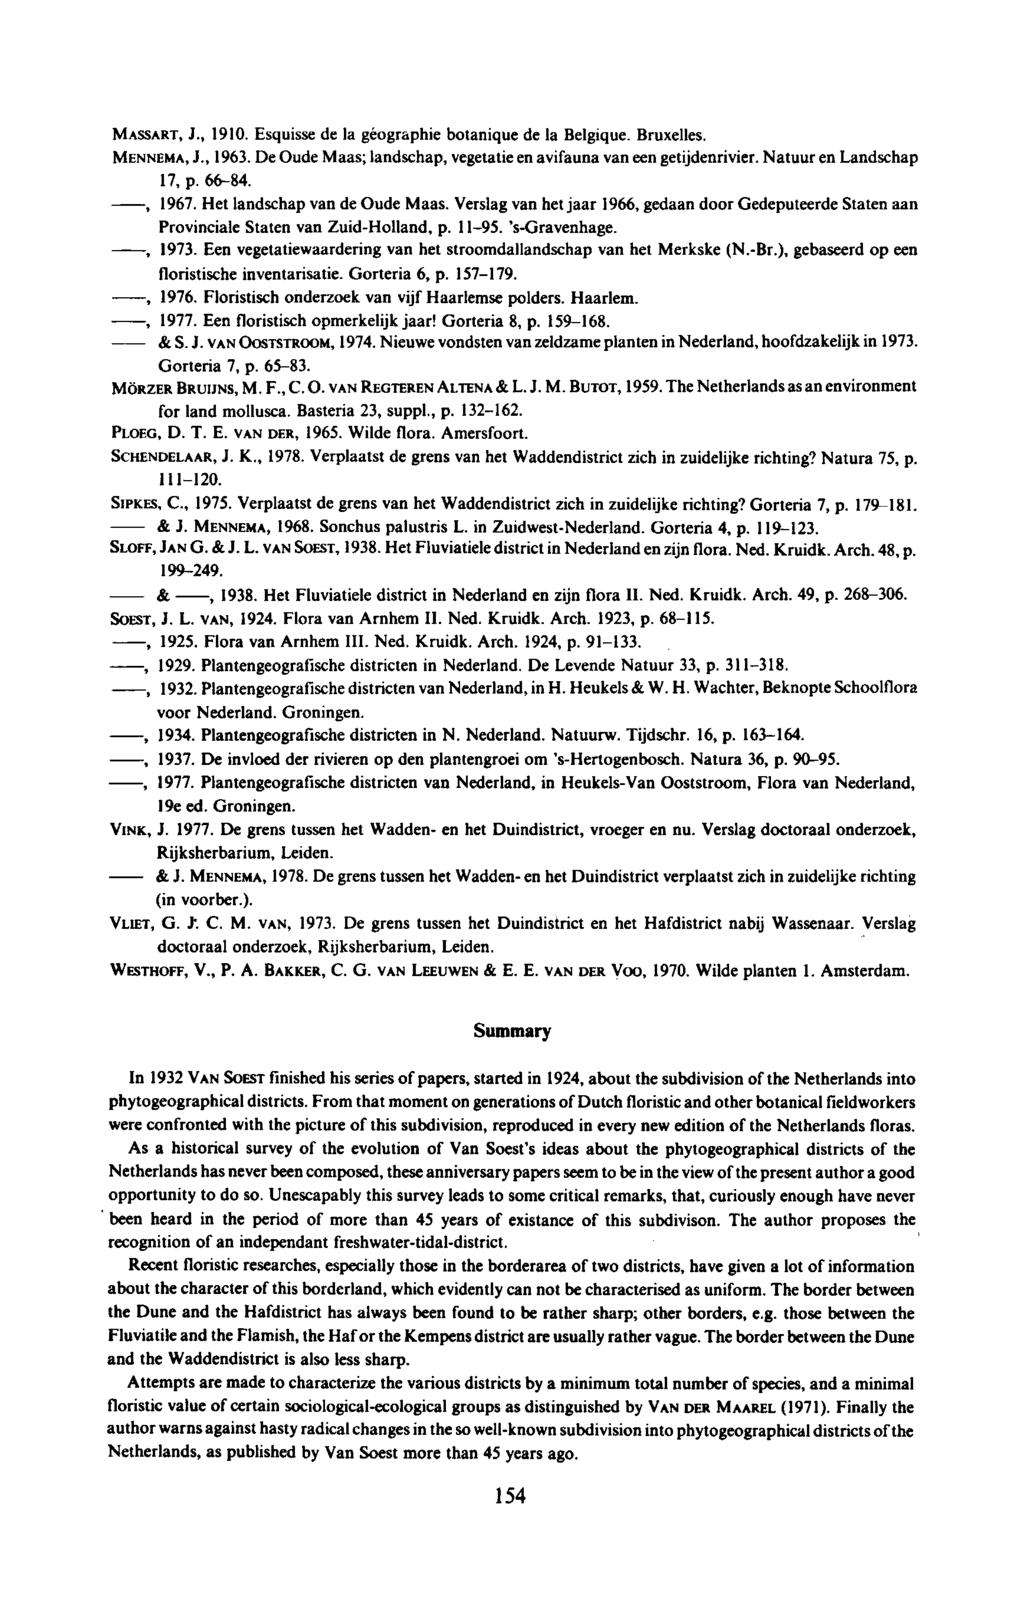 , SLOFF, JAN G. & J.L. VAN SOEST, 1938. Het Fluviatiele district in Nederland en zijn flora. Ned. Kruidk. Arch. 48, p.,, MASSART, J., 1910. Esquisse de la géographie botanique de la Belgique.